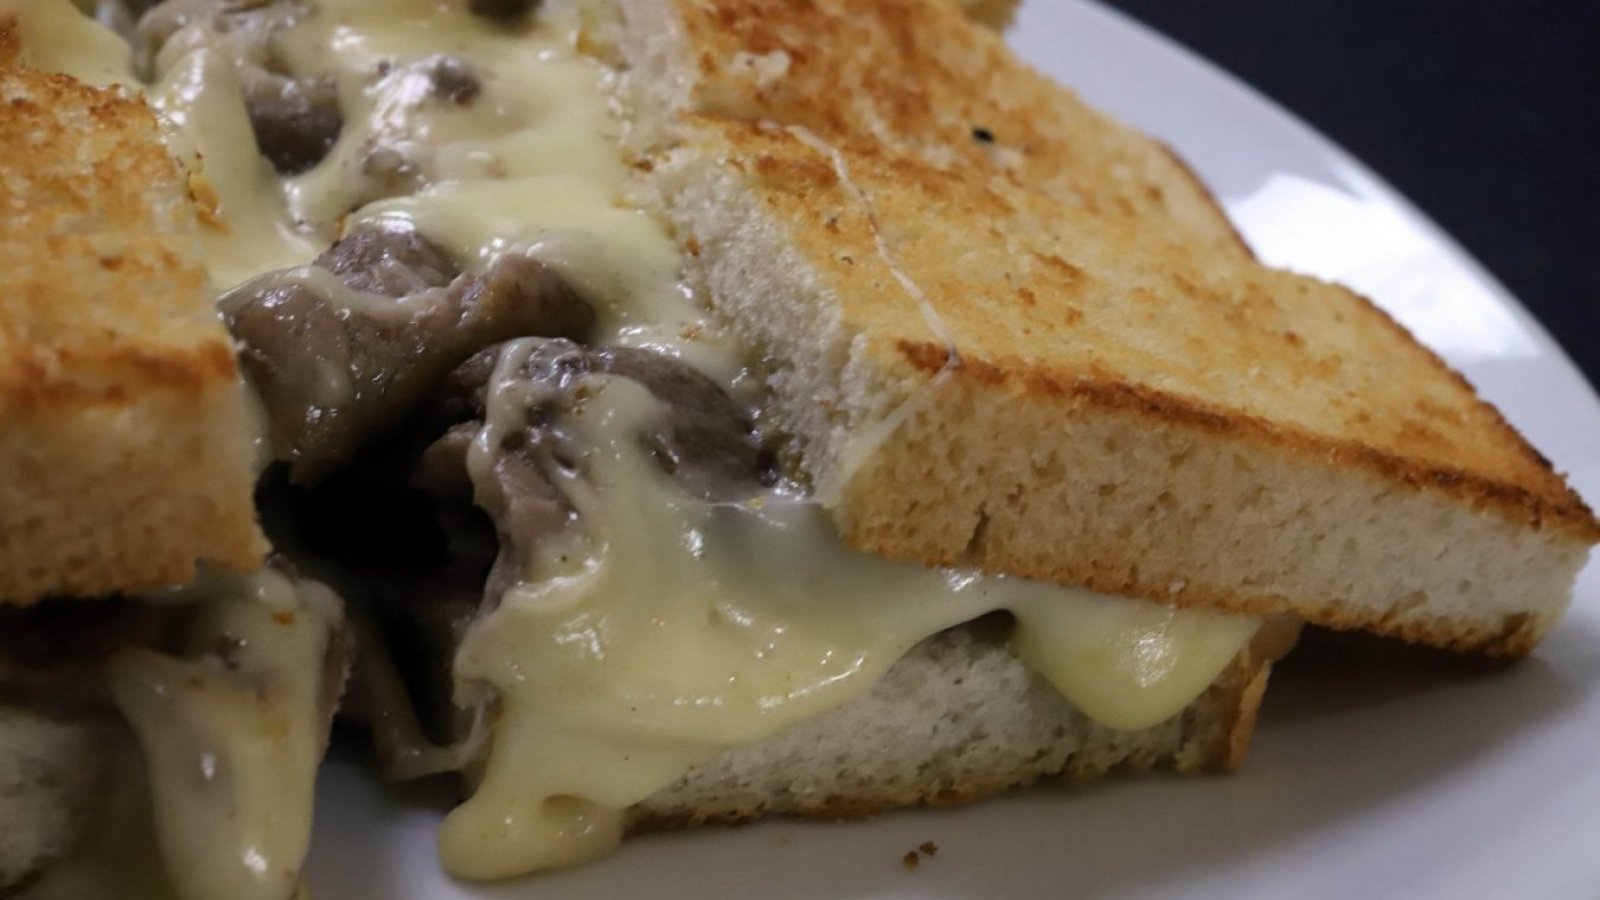 Día del Barros Luco. Sándwich de pan, carne y queso.